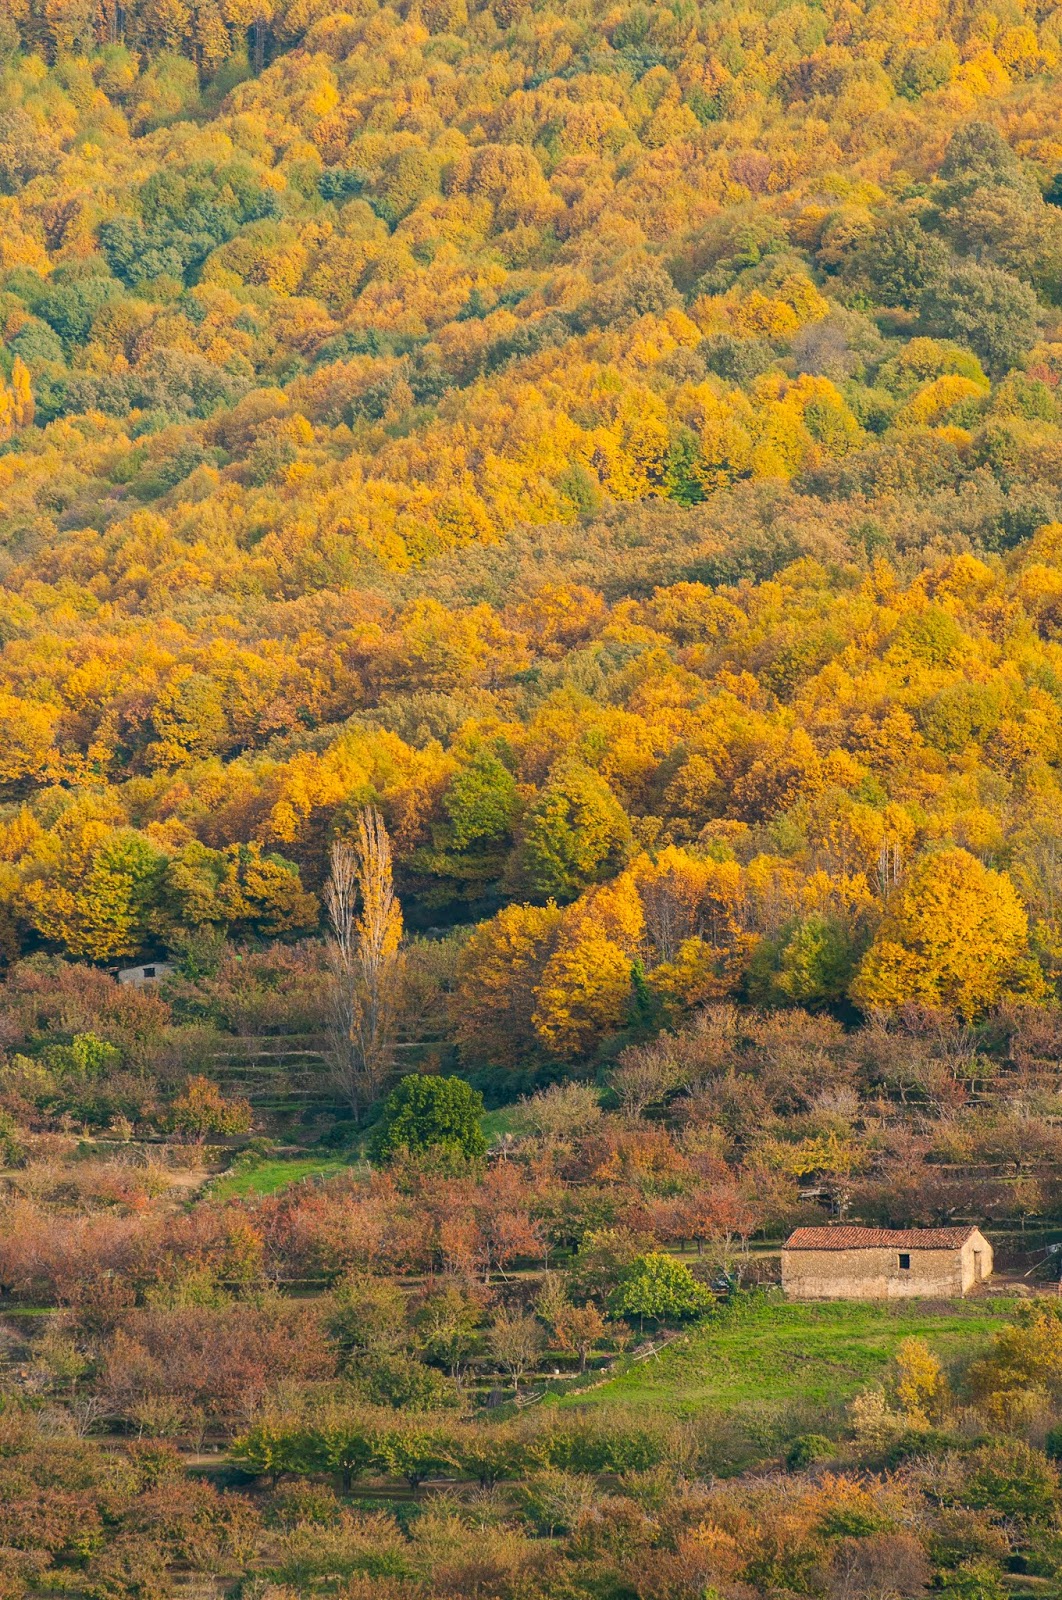 Laderas del Valle del Jerte. Un paisaje cultivado